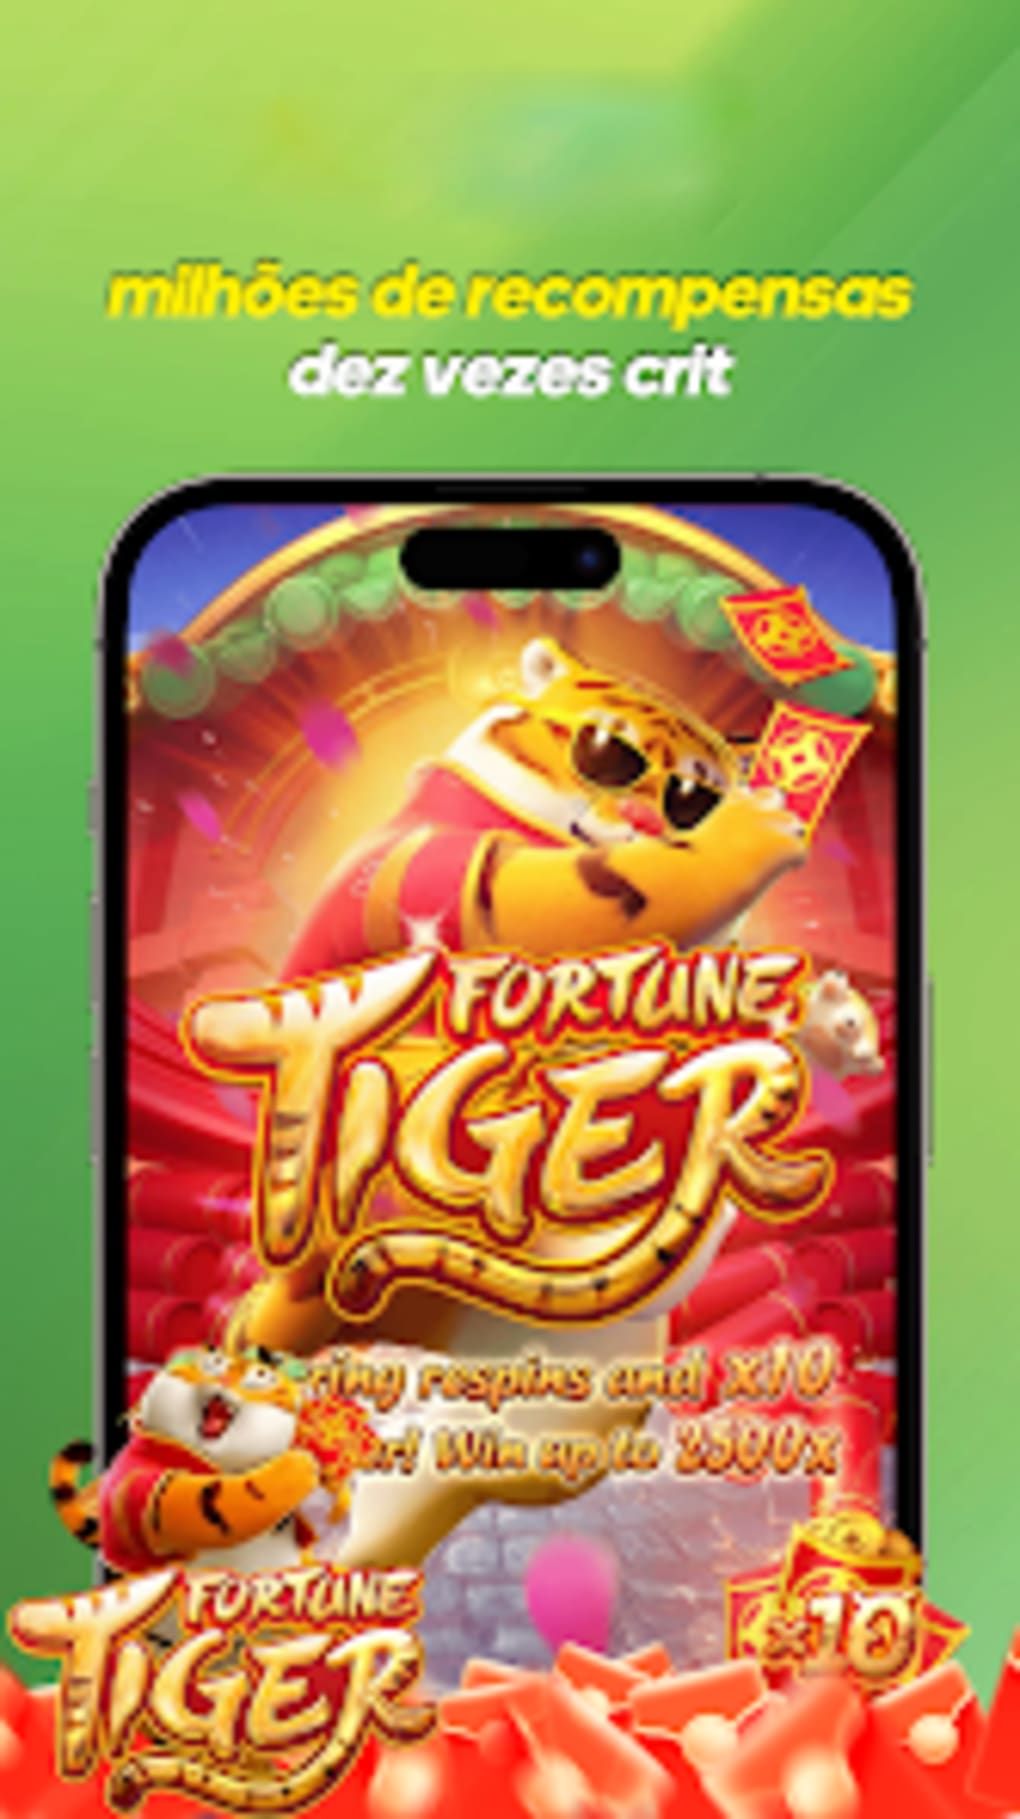 💯 O Jogo Fortune Tiger é uma slot da PG Soft (Pocket Games Soft), uma  provedora de caça-níqueis renomada que cria jogos de qualidade.…